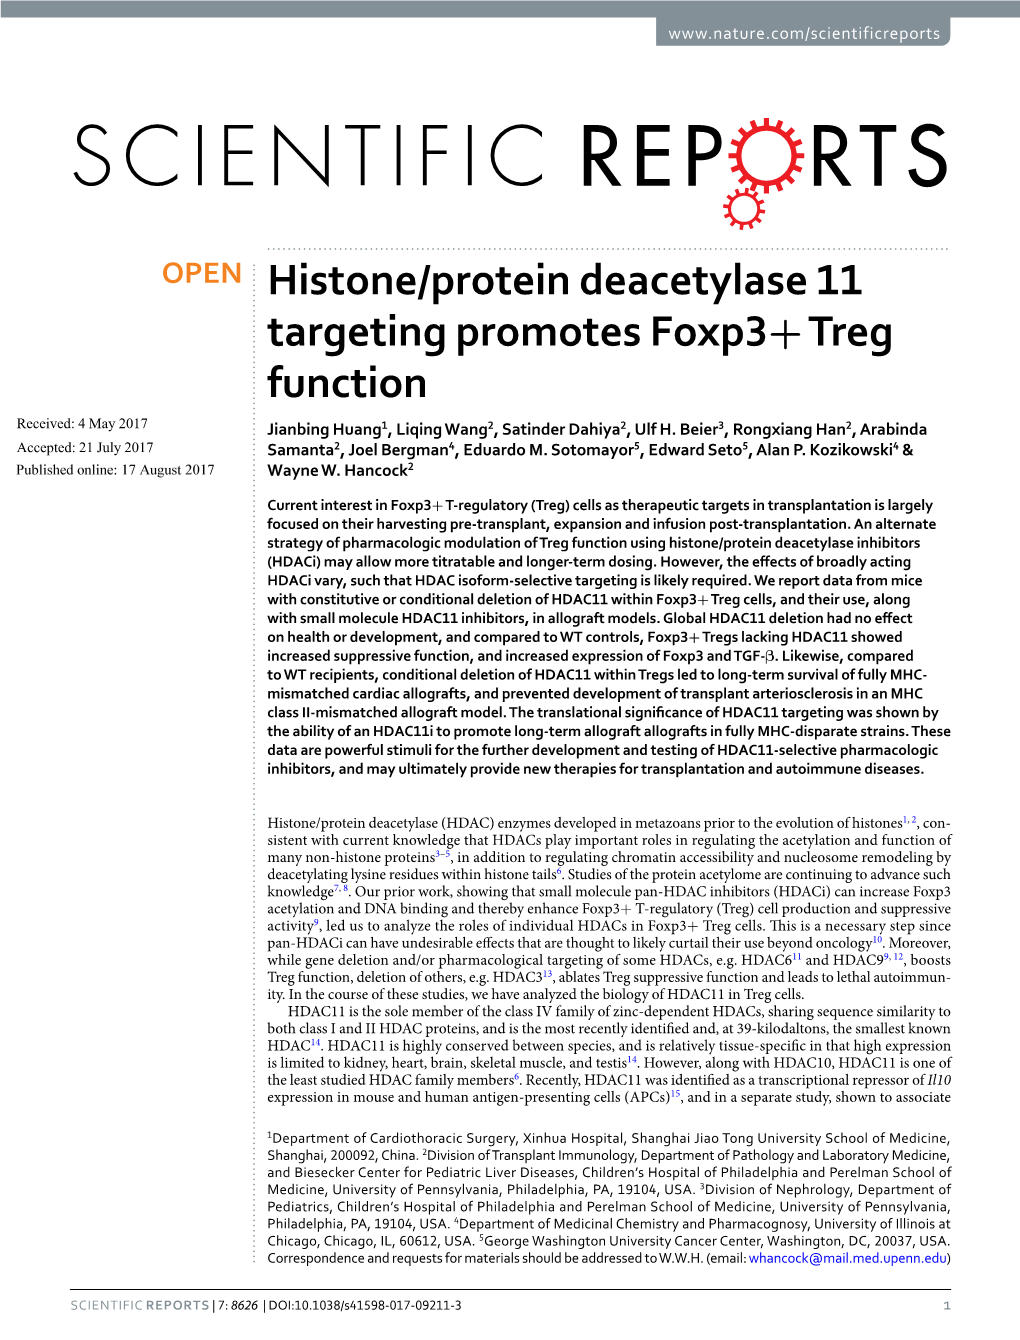 Histone/Protein Deacetylase 11 Targeting Promotes Foxp3+ Treg Function Received: 4 May 2017 Jianbing Huang1, Liqing Wang2, Satinder Dahiya2, Ulf H